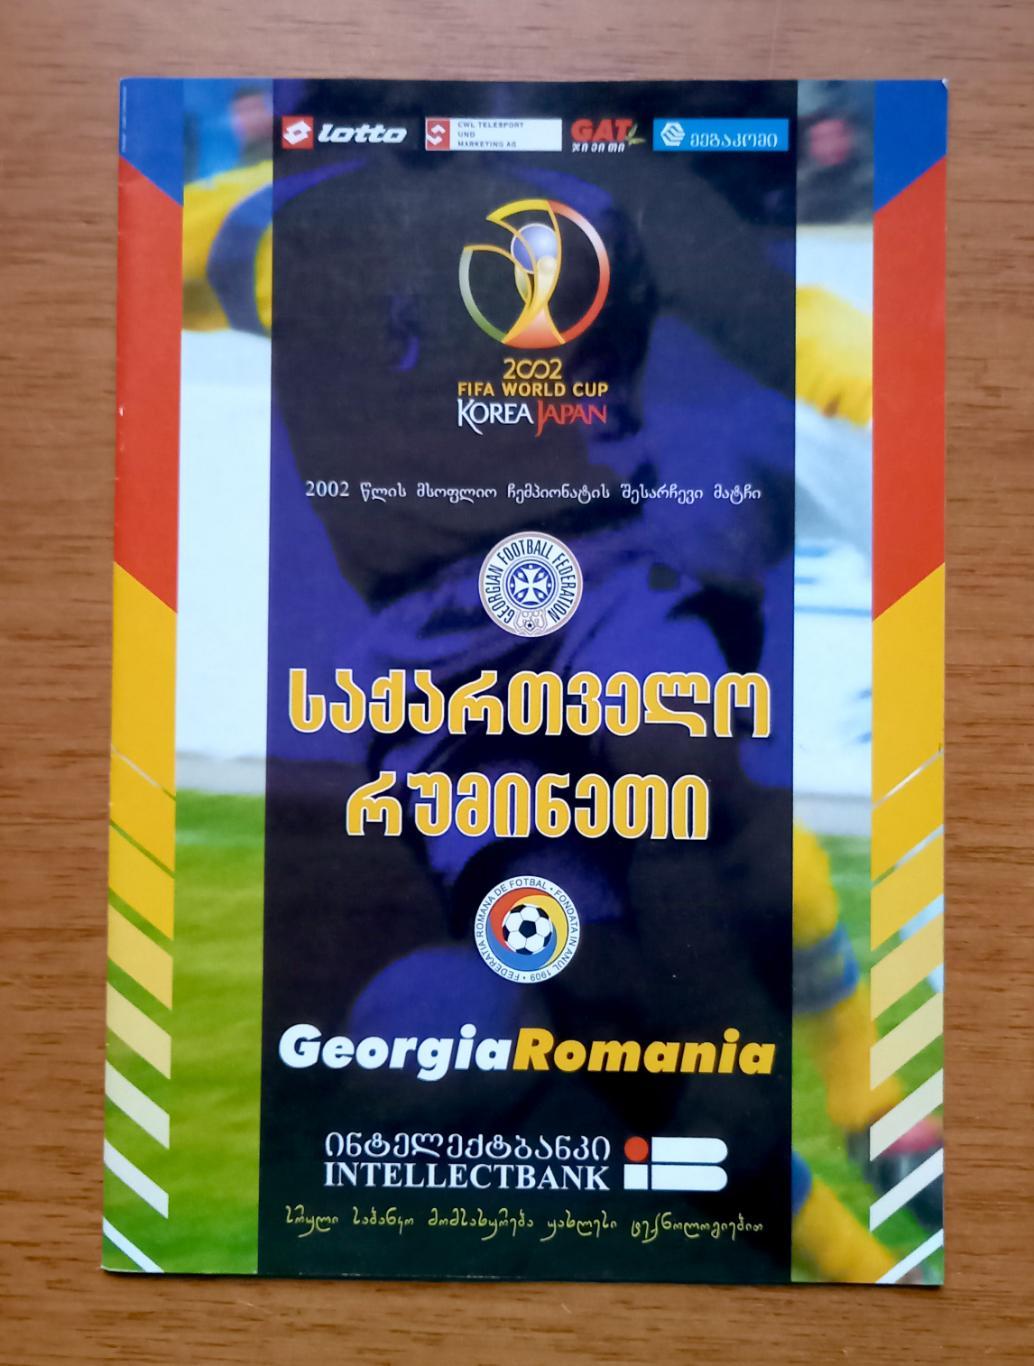 Футбол. Программа. Грузия - Румыния. 28.03.2001. Отборочный матч ЧМ 2002